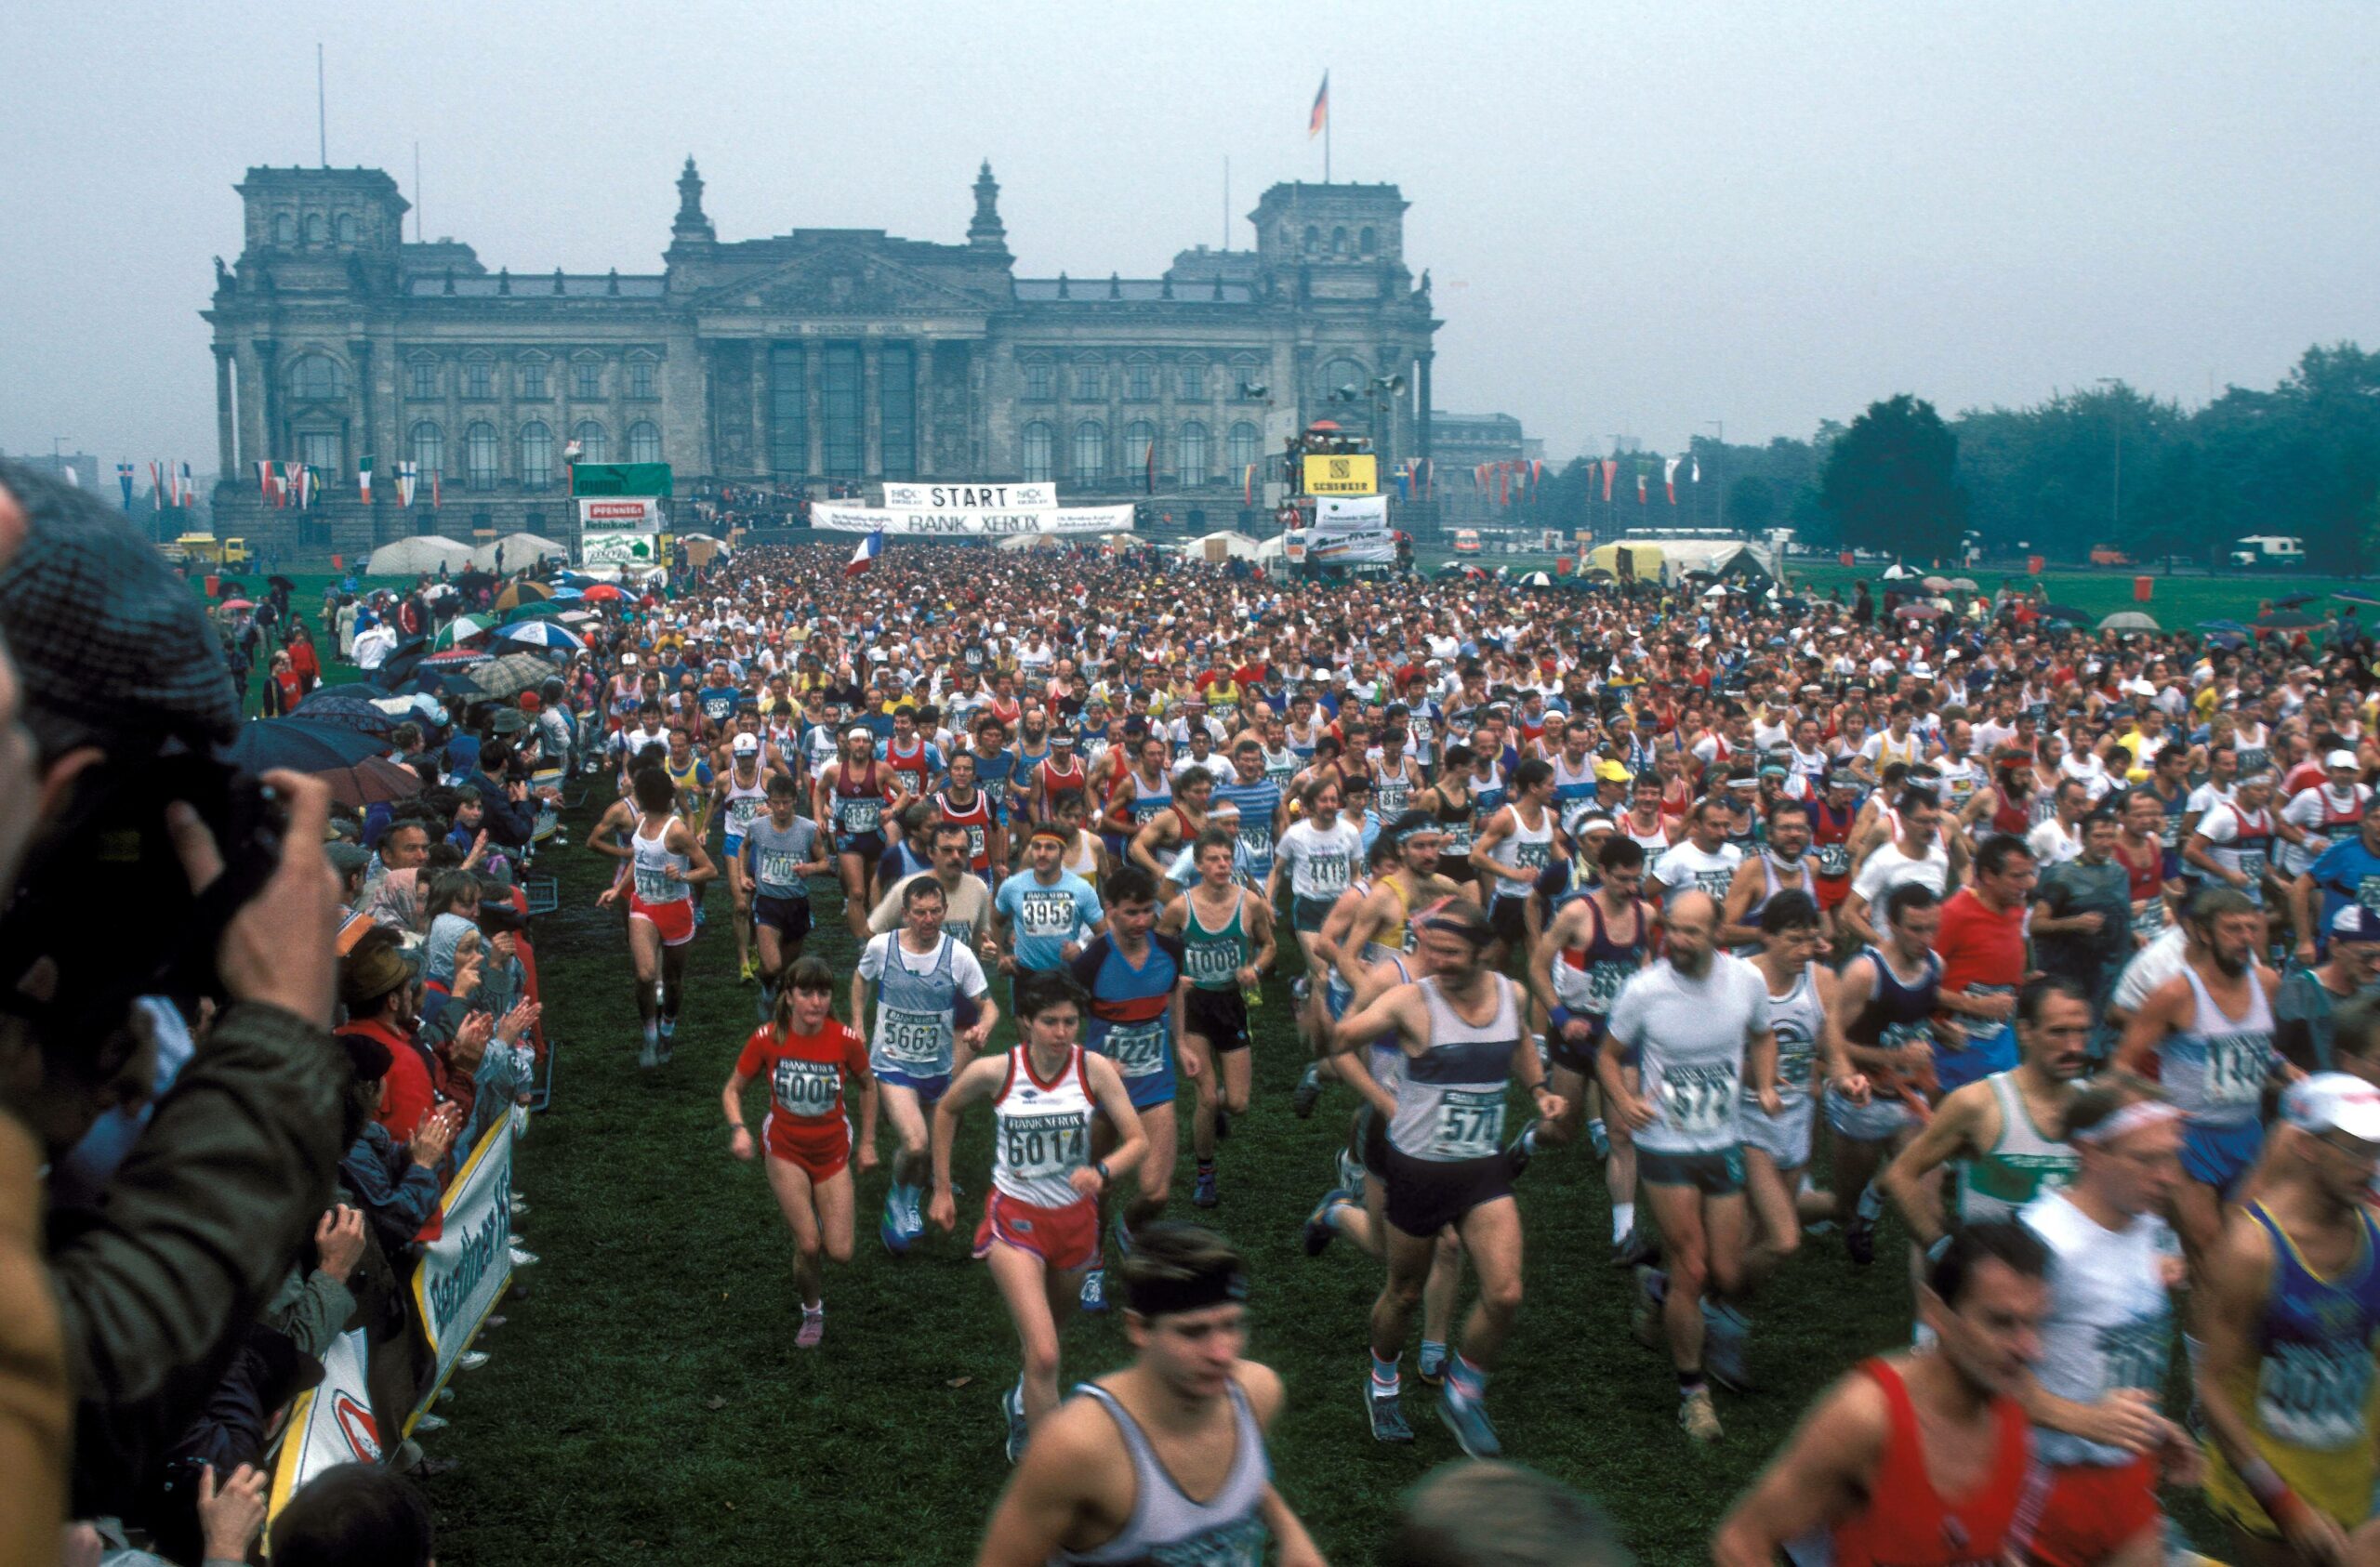 Teilnehmerfeld des Berlin Marathons 1984 kurz nach dem Start vor dem Reichstagsgebäude, 23. September 1984. Foto: Imago/Günter Schneide